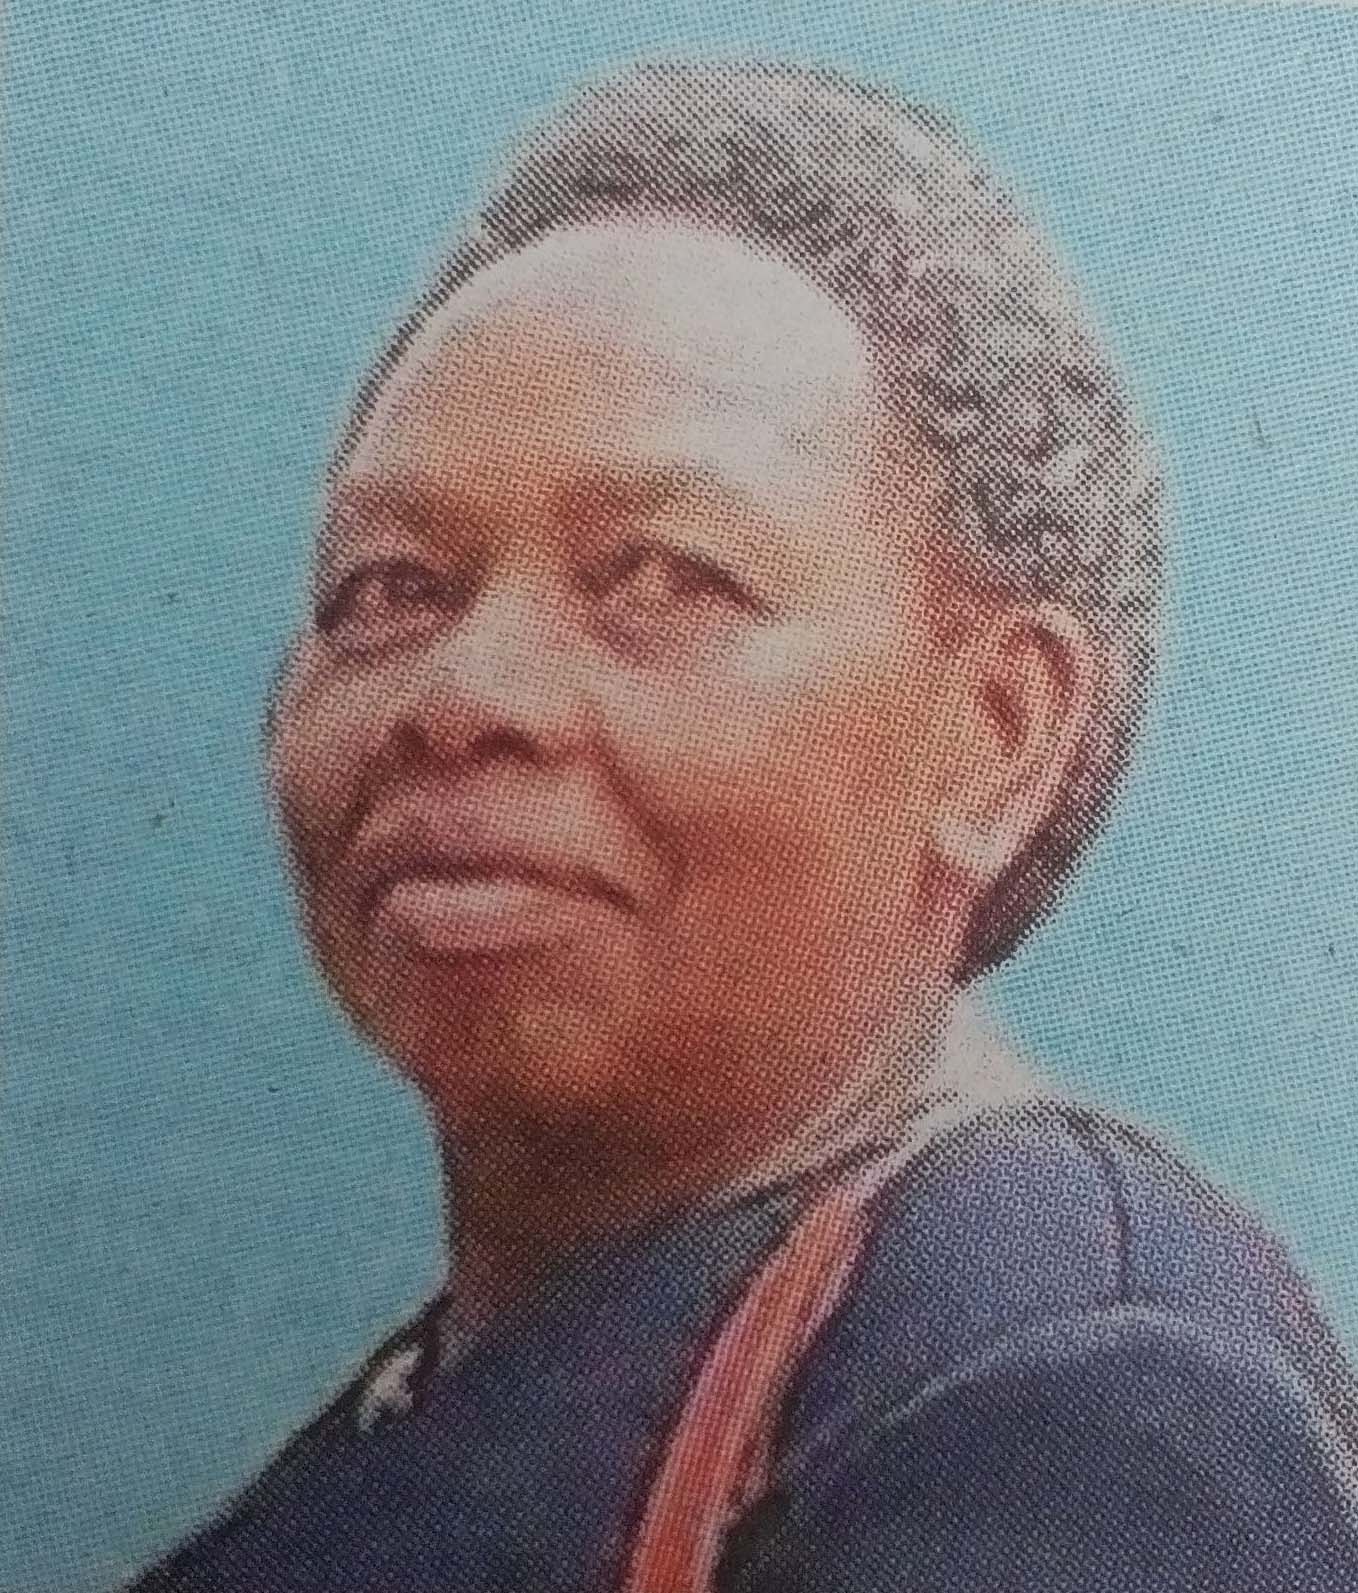 Obituary Image of Faith Wanjiku Mbuthia